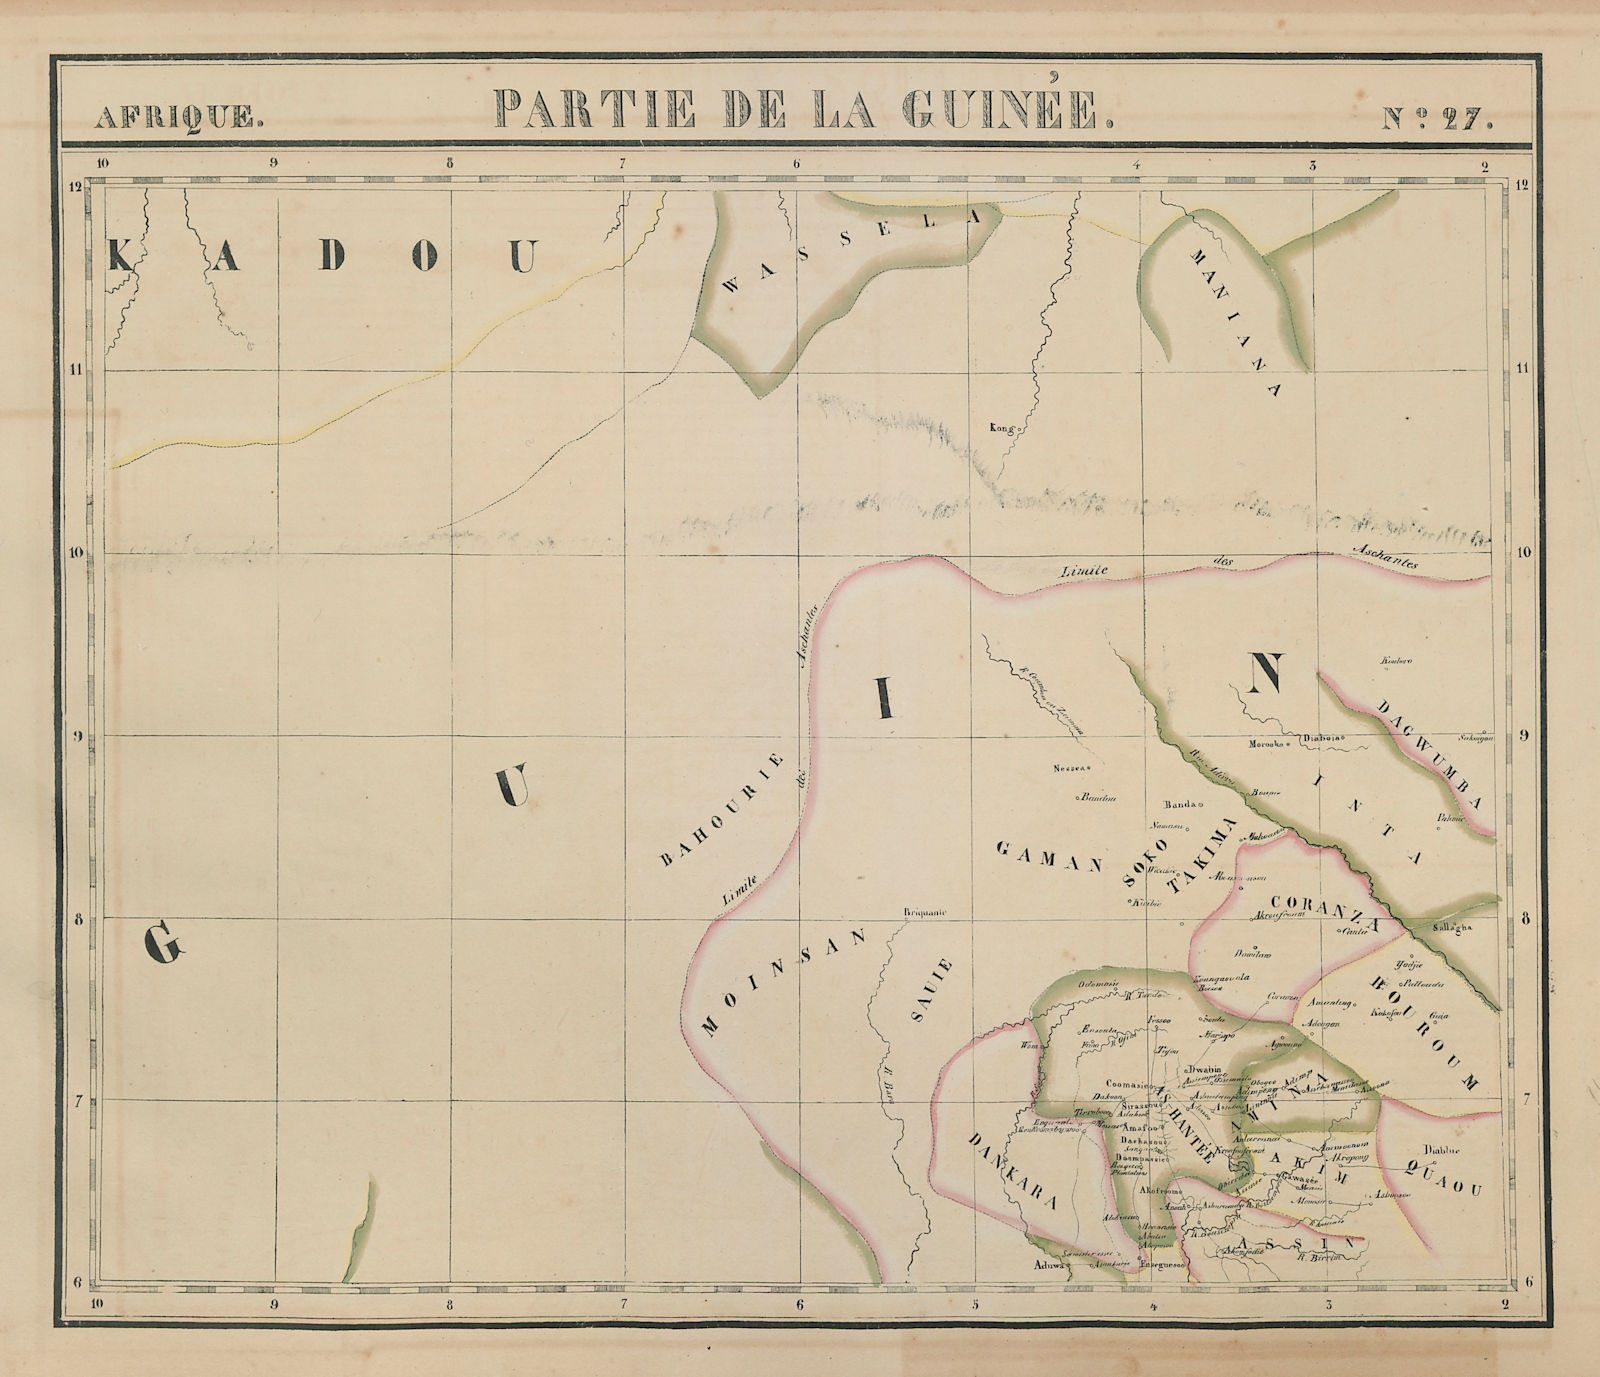 Afrique. Partie de la Guinée #27. Ghana. VANDERMAELEN 1827 old antique map